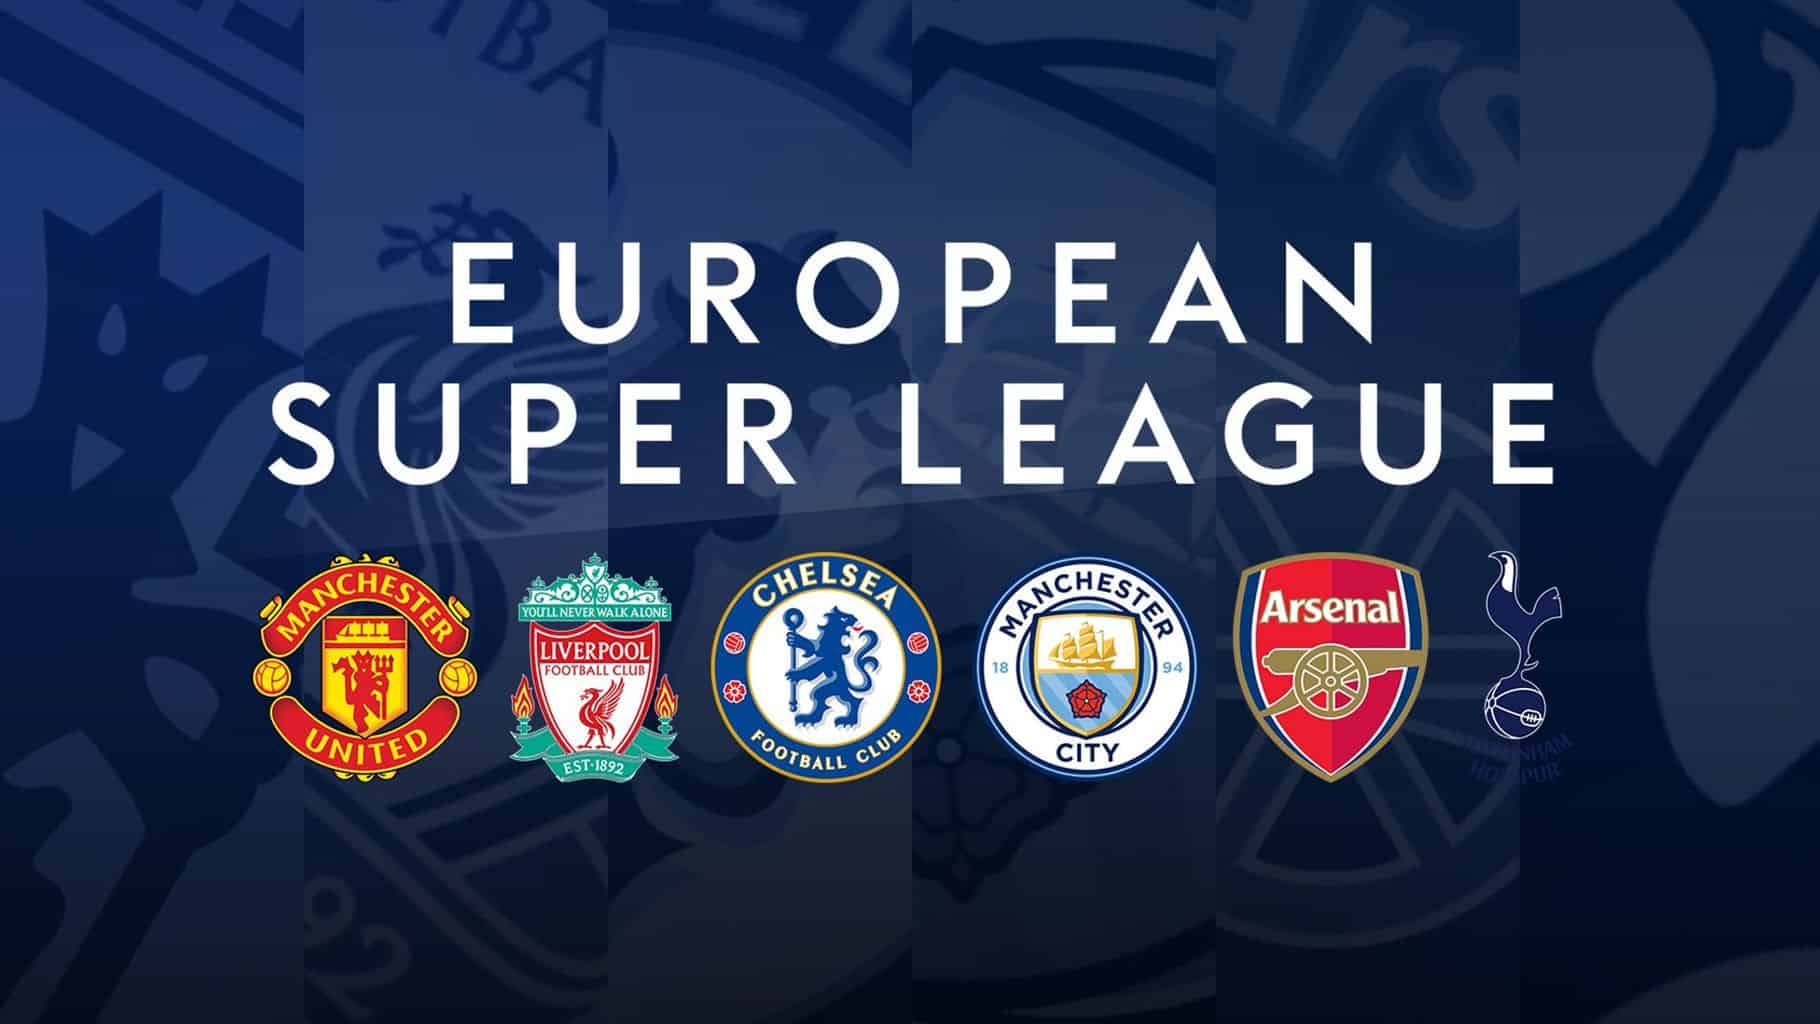 Superliga Europeia: A queda do futebol europeu